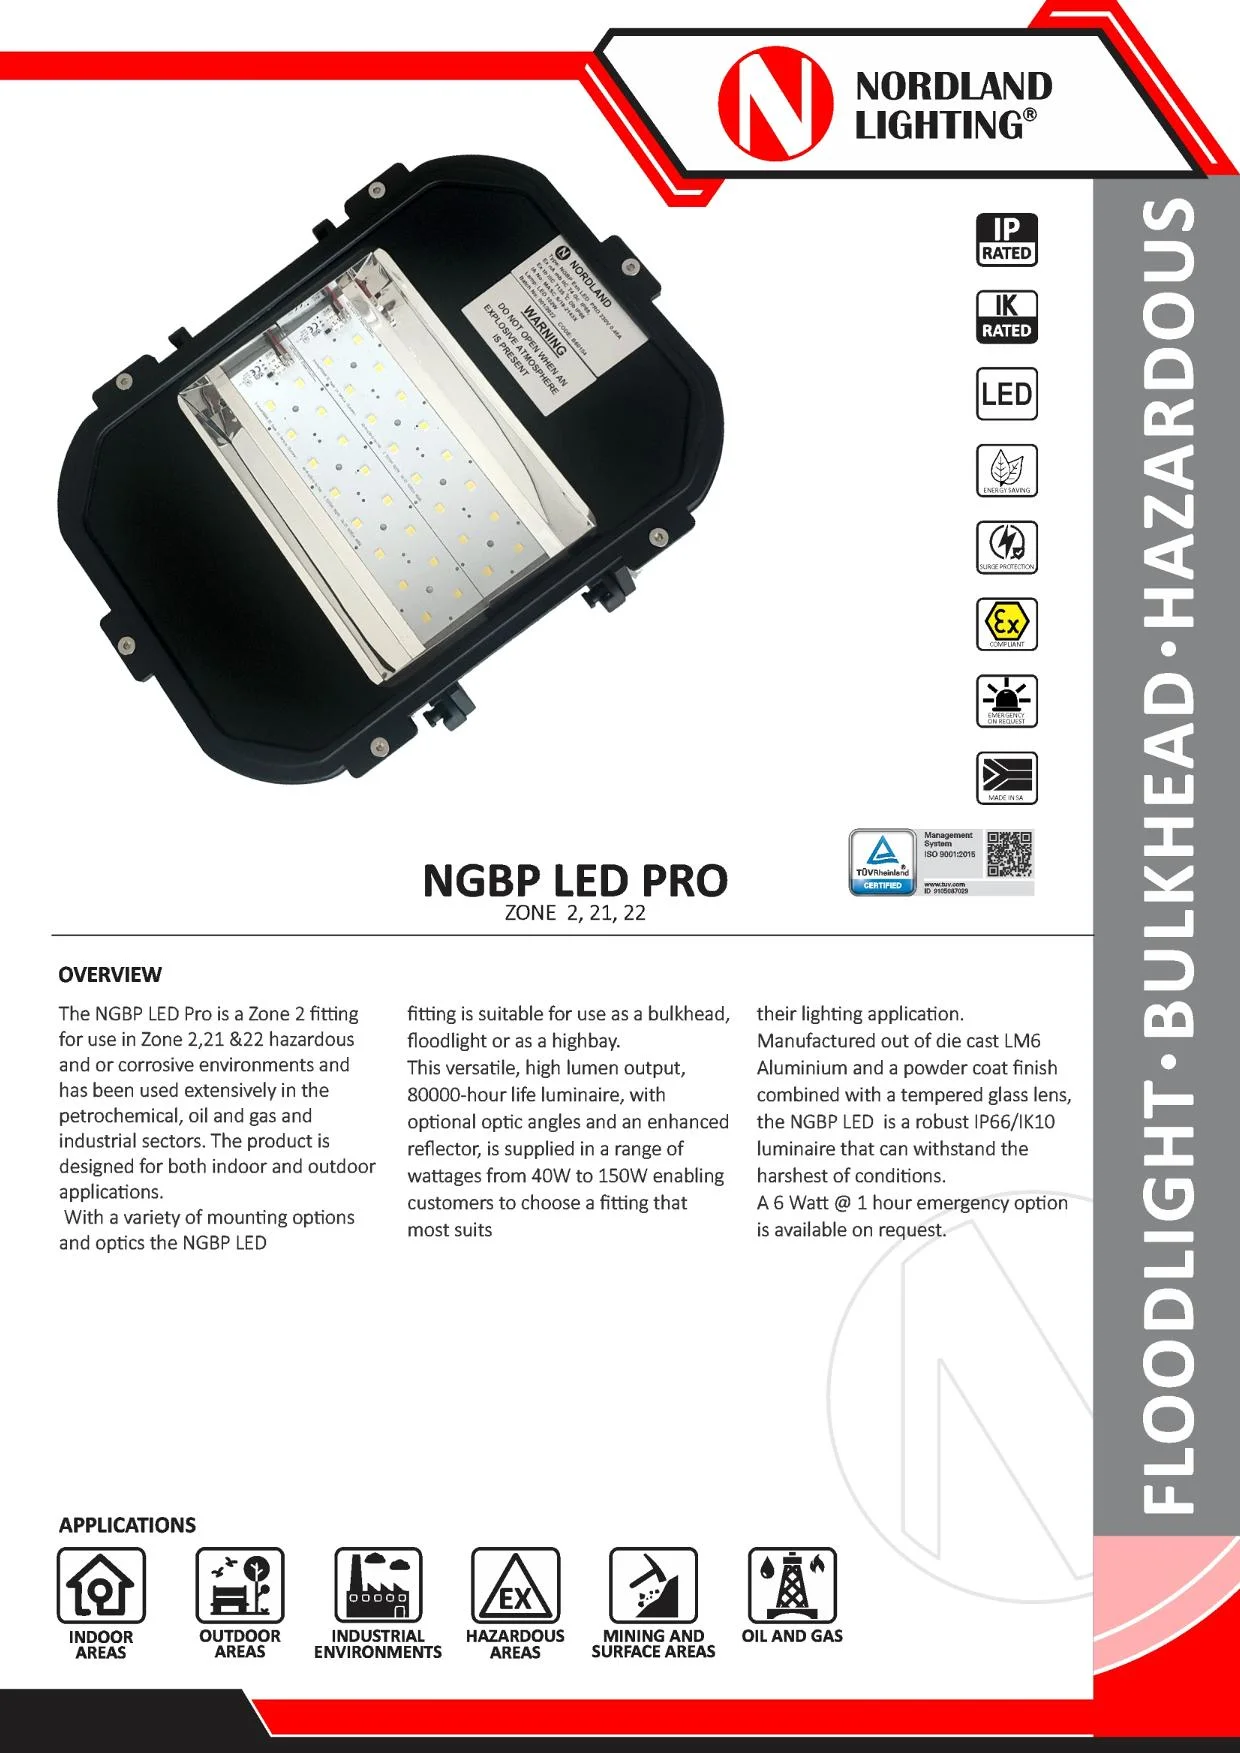 NL14 Nordland NGBP-Exn LED PRO Zone 2 Fitting